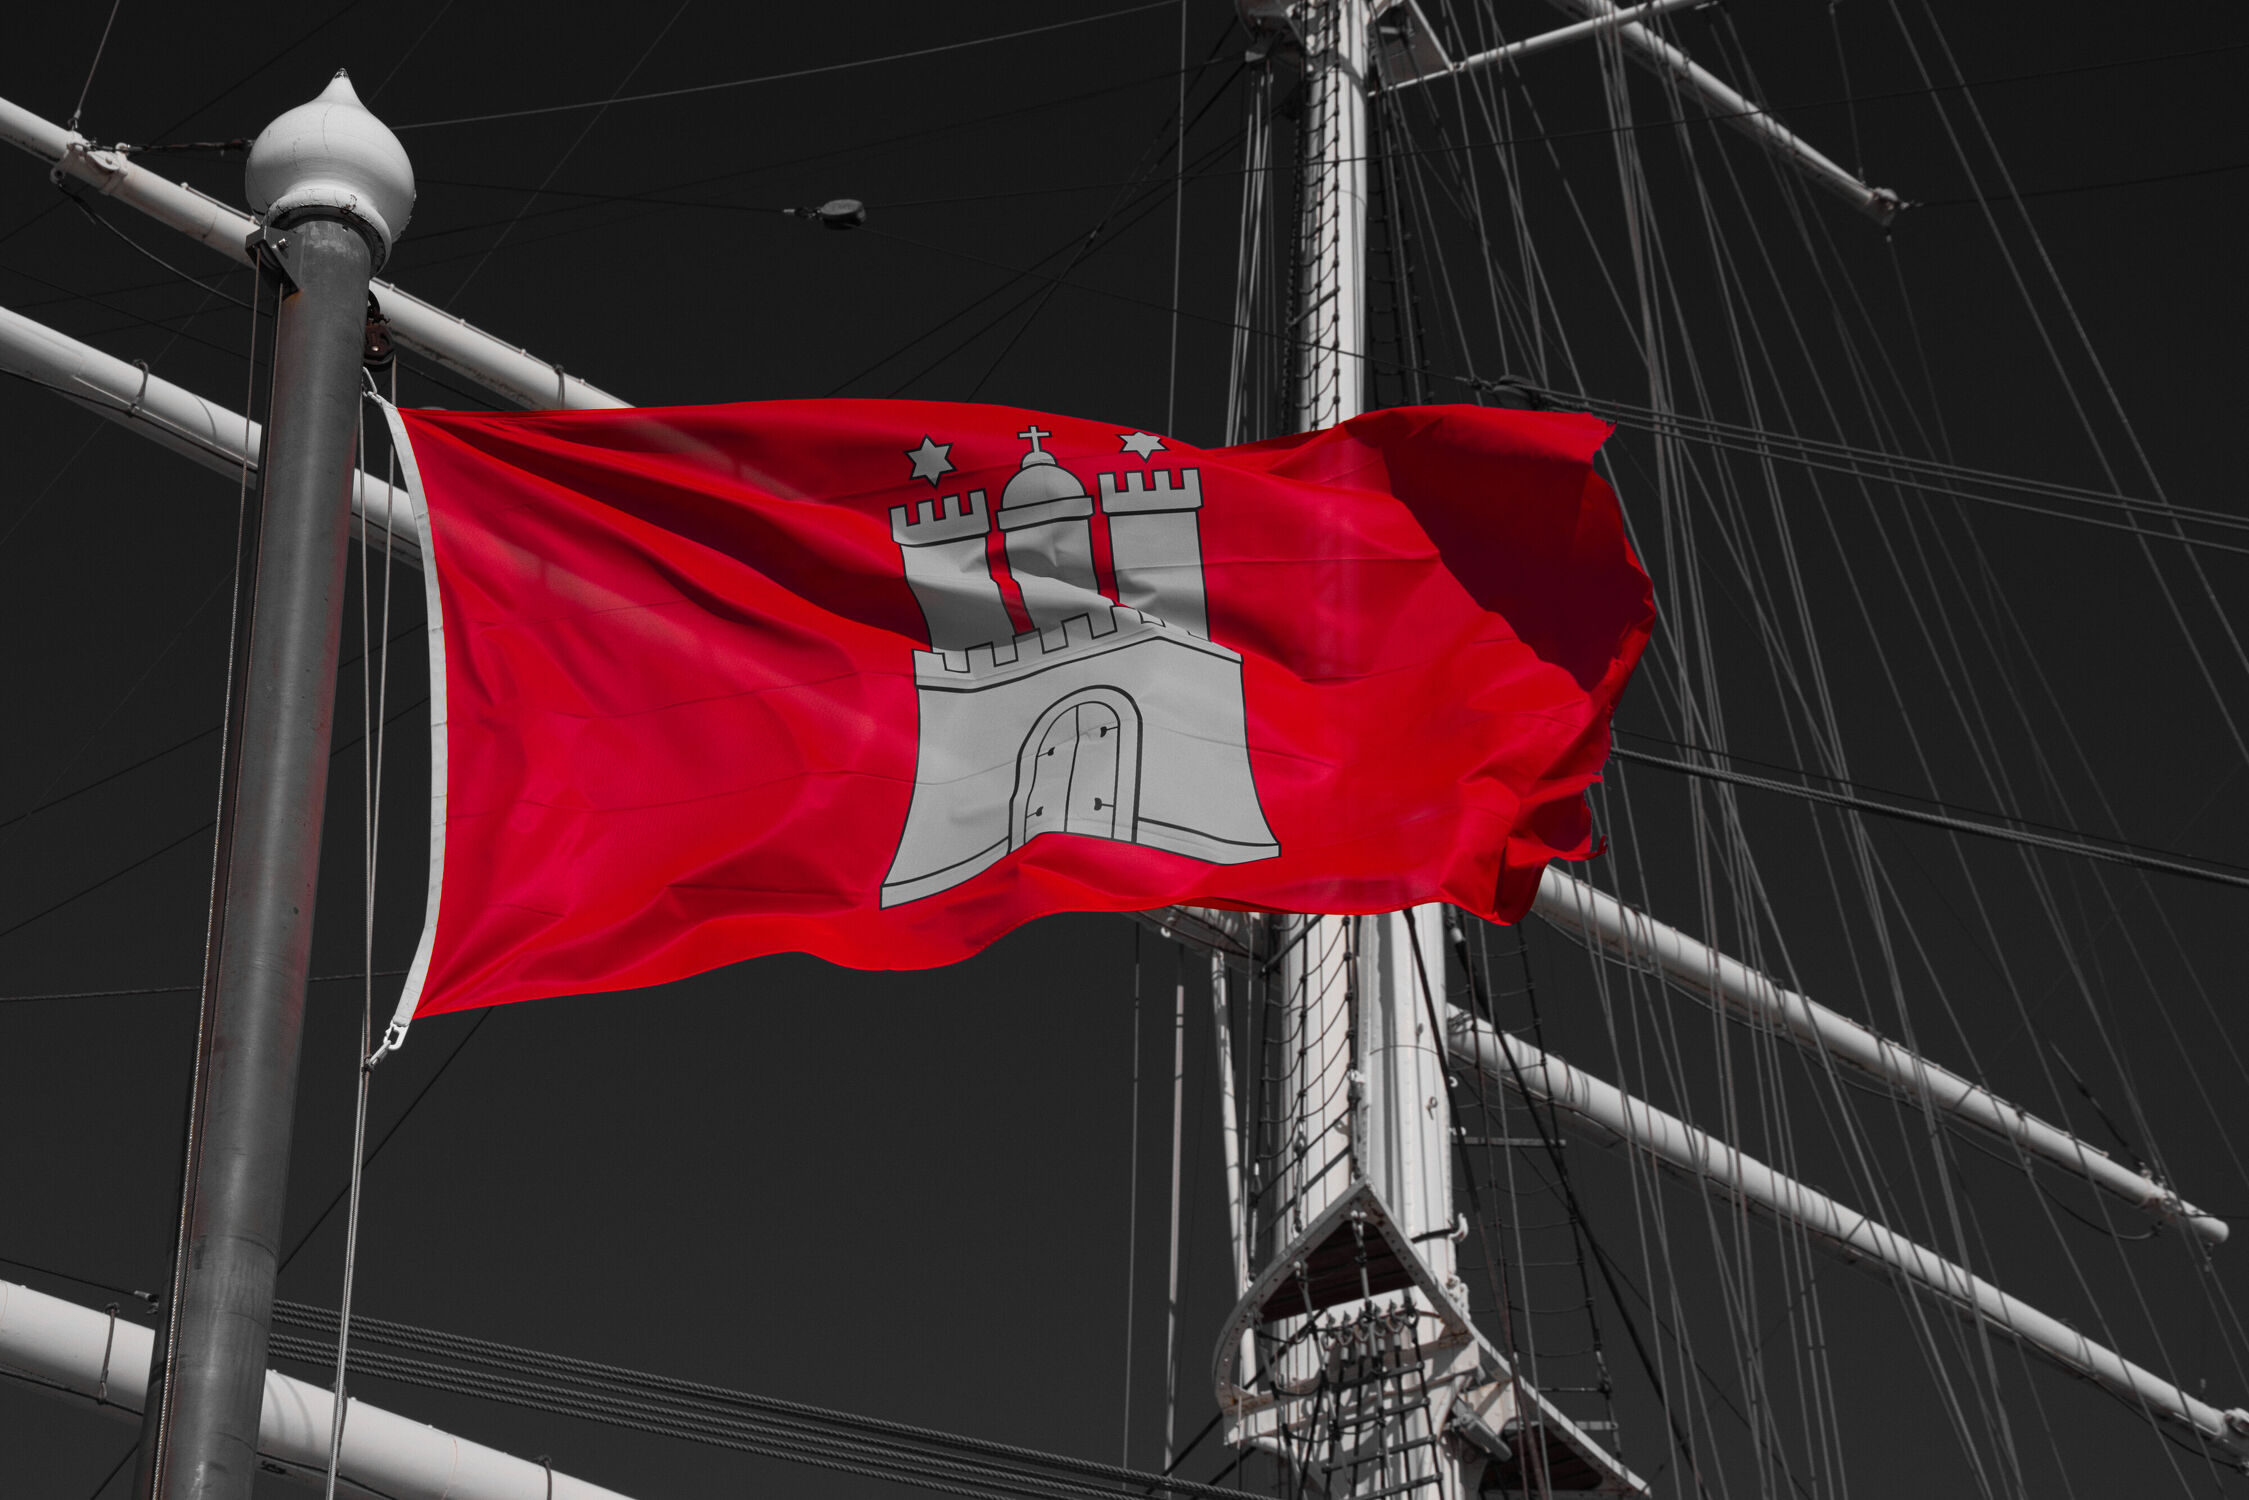 Bild mit Rot, Schiff, Segelschiff, schwarz & weiss, Wind, Hamburg, fahne, wappen